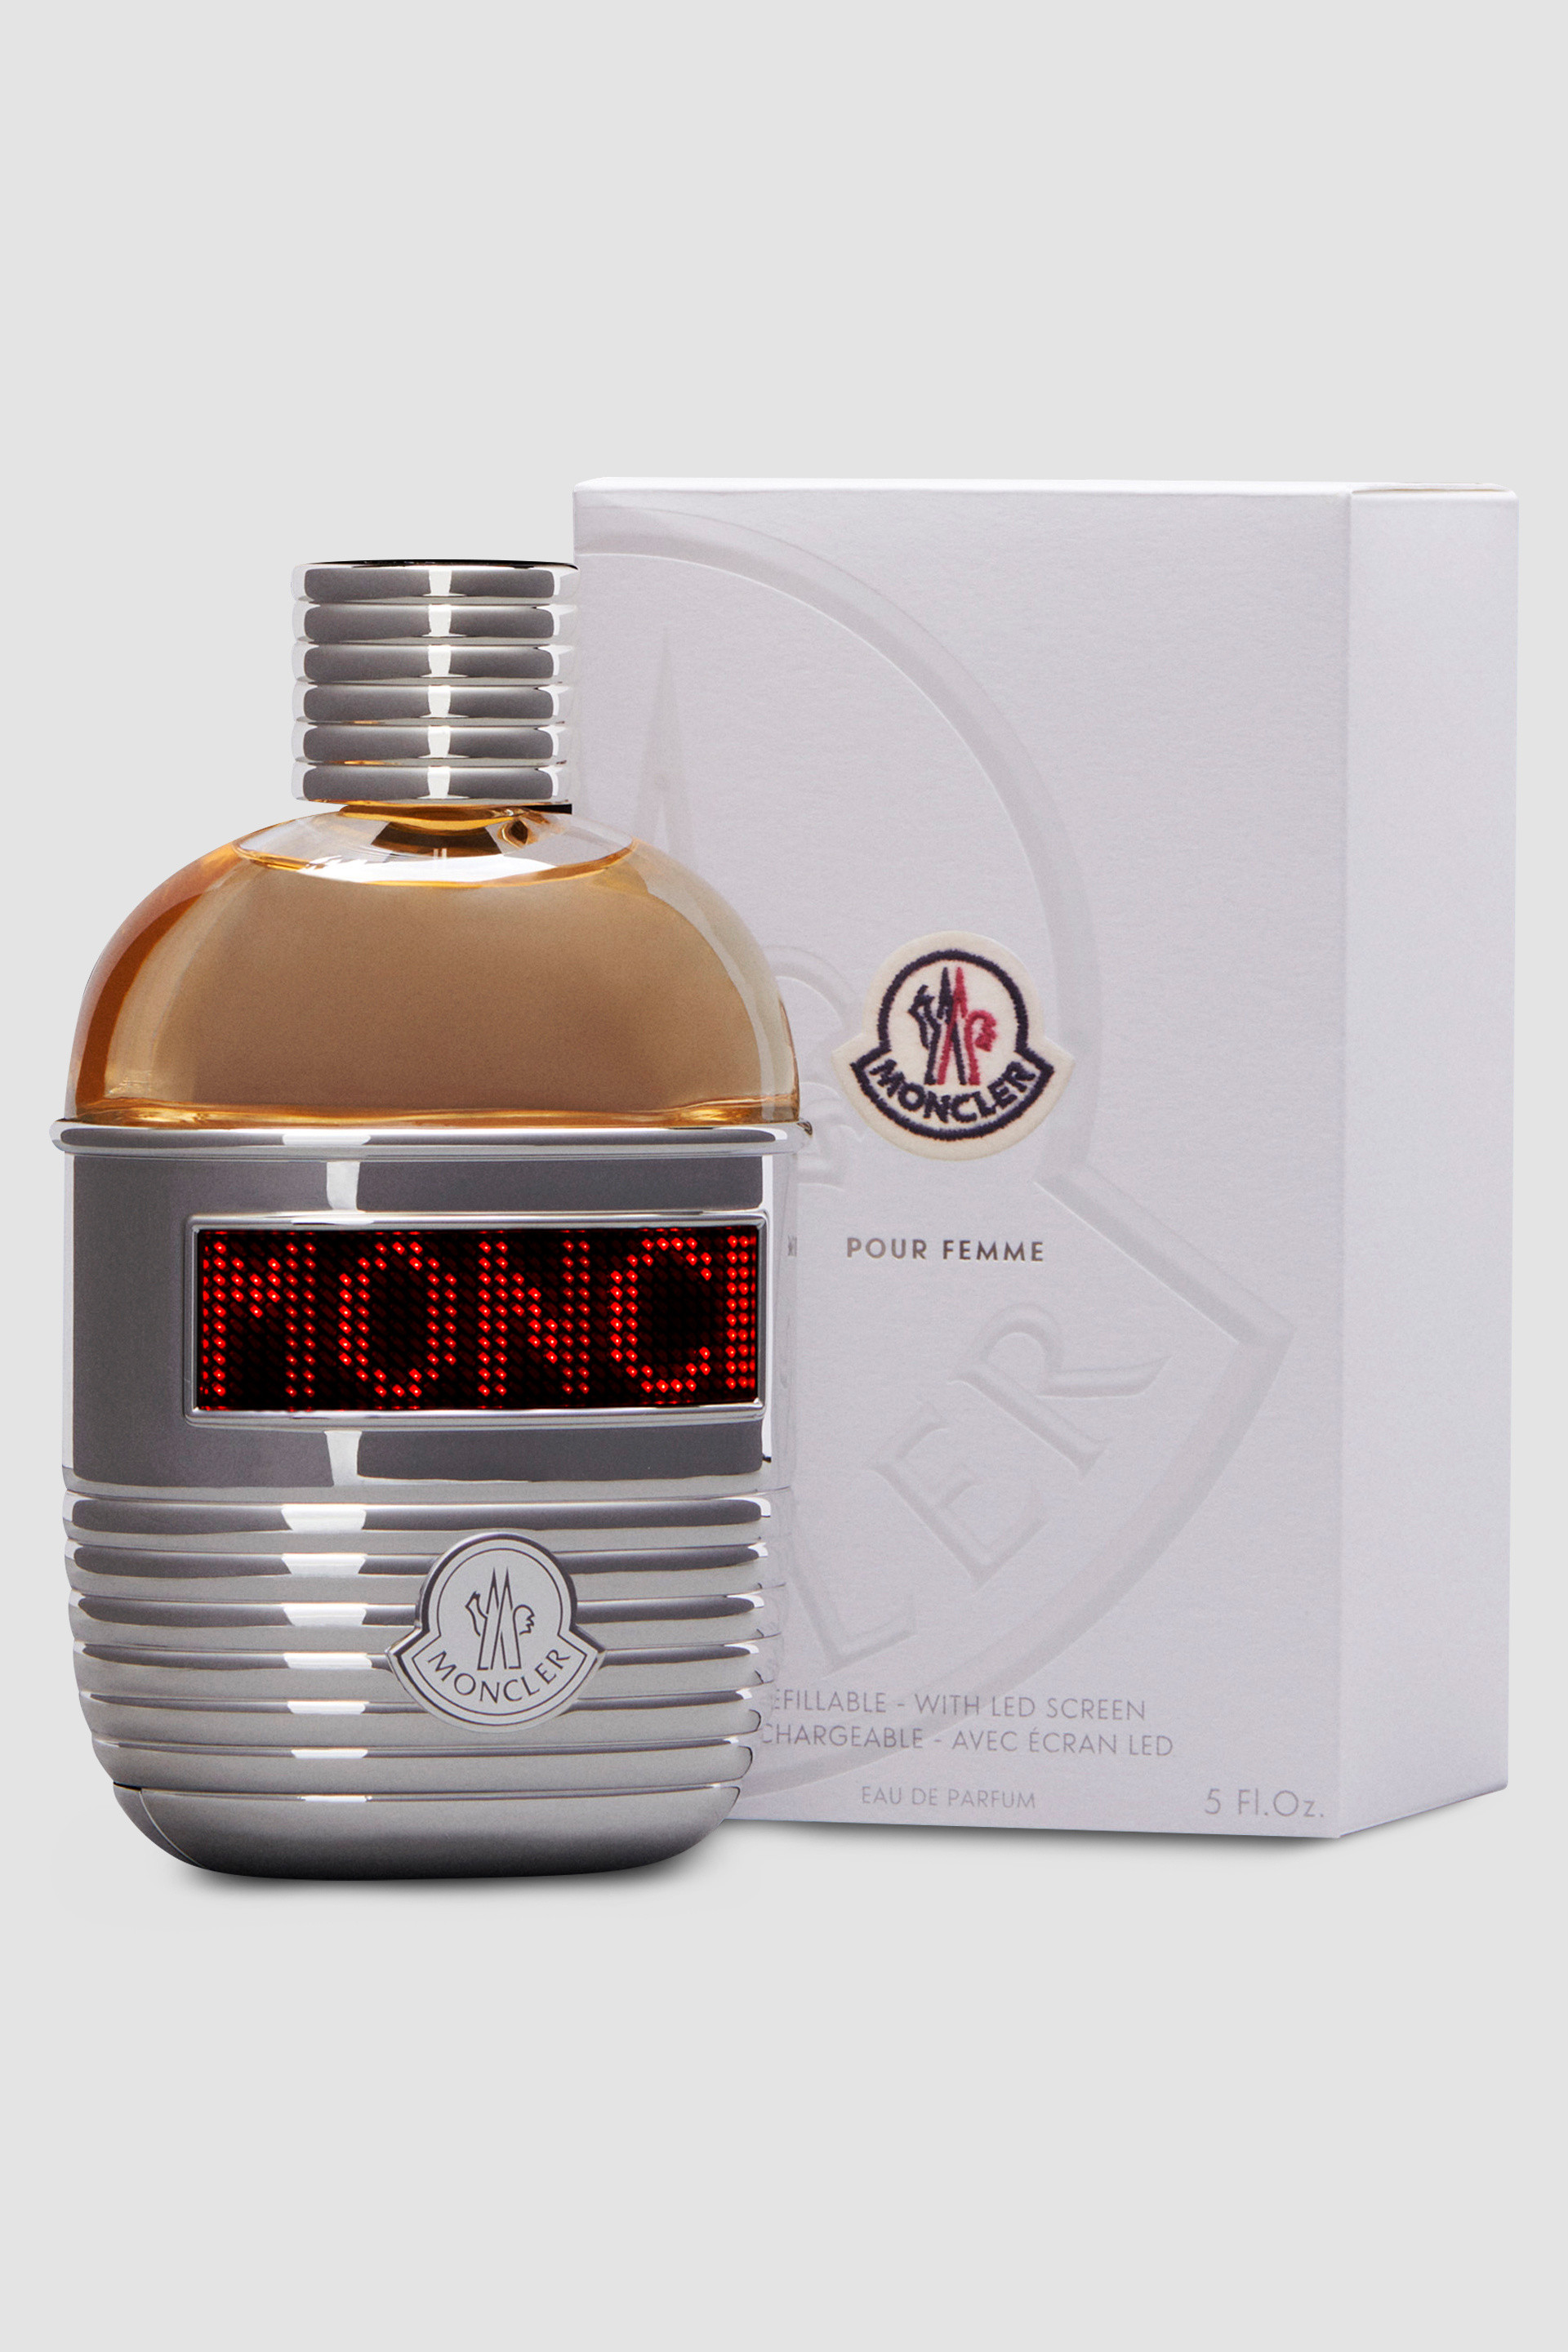 Black Moncler Pour Femme 5 Fl.Oz. - Perfumes for Women | Moncler US